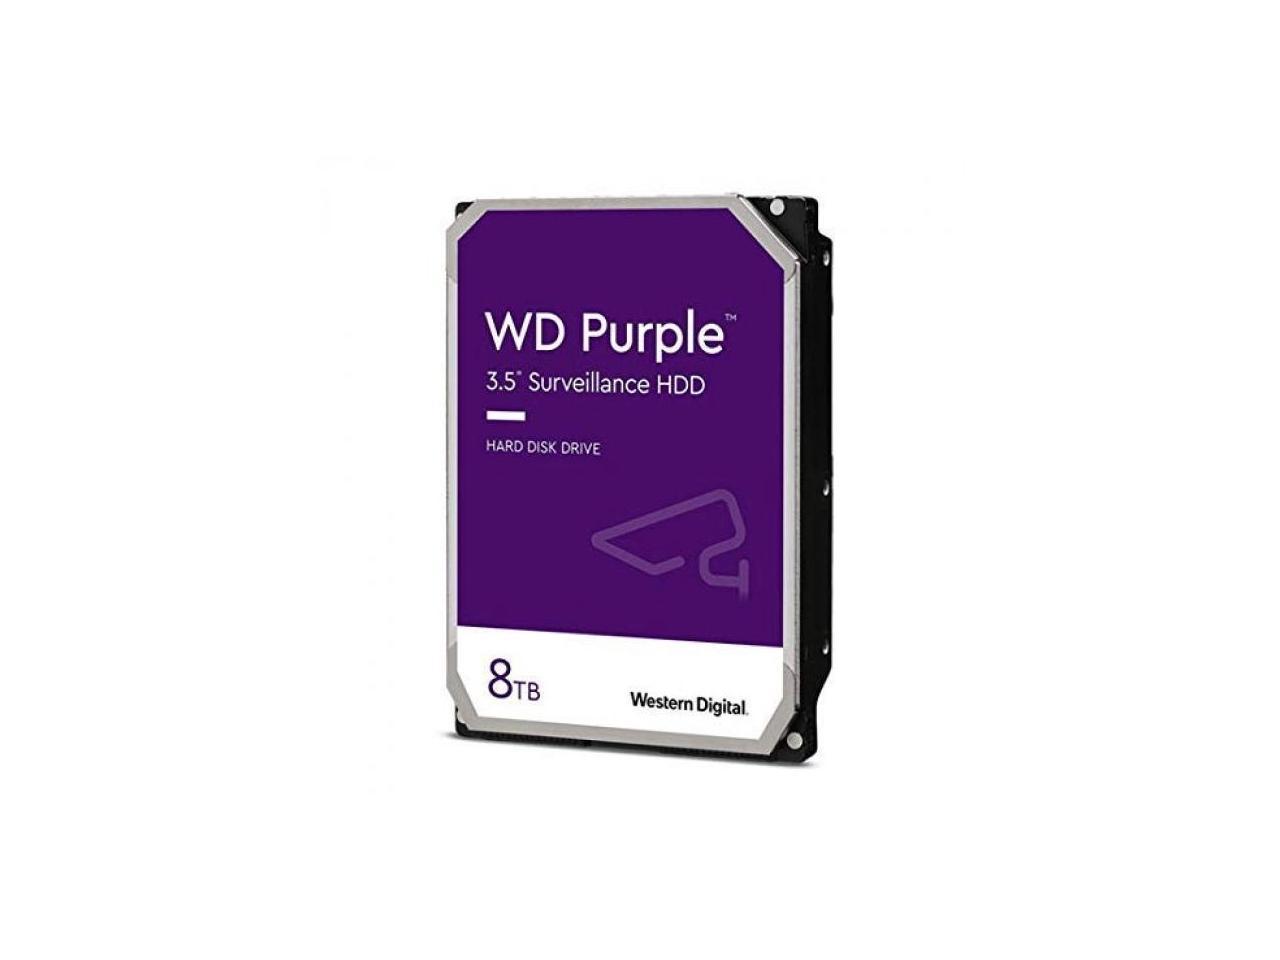 Wd Purple Wd84Purz 8Tb 5640 Rpm 128Mb Cache Sata 6.0Gb/S 3.5" Internal Hard Drive Bare Drive